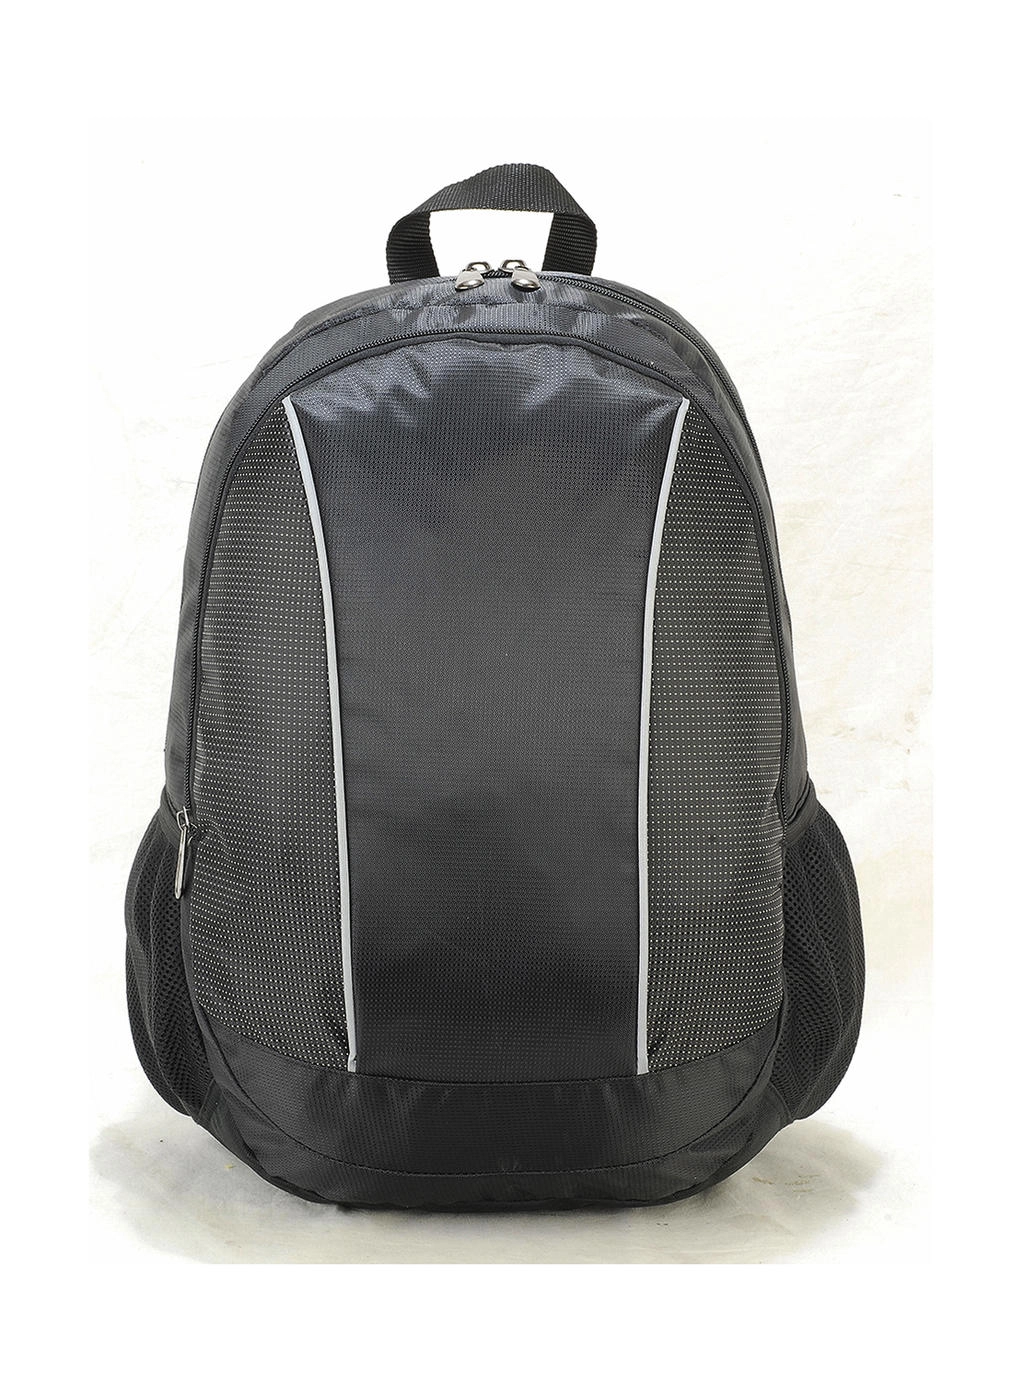 Zurich Classic Laptop Backpack zum Besticken und Bedrucken in der Farbe Black mit Ihren Logo, Schriftzug oder Motiv.